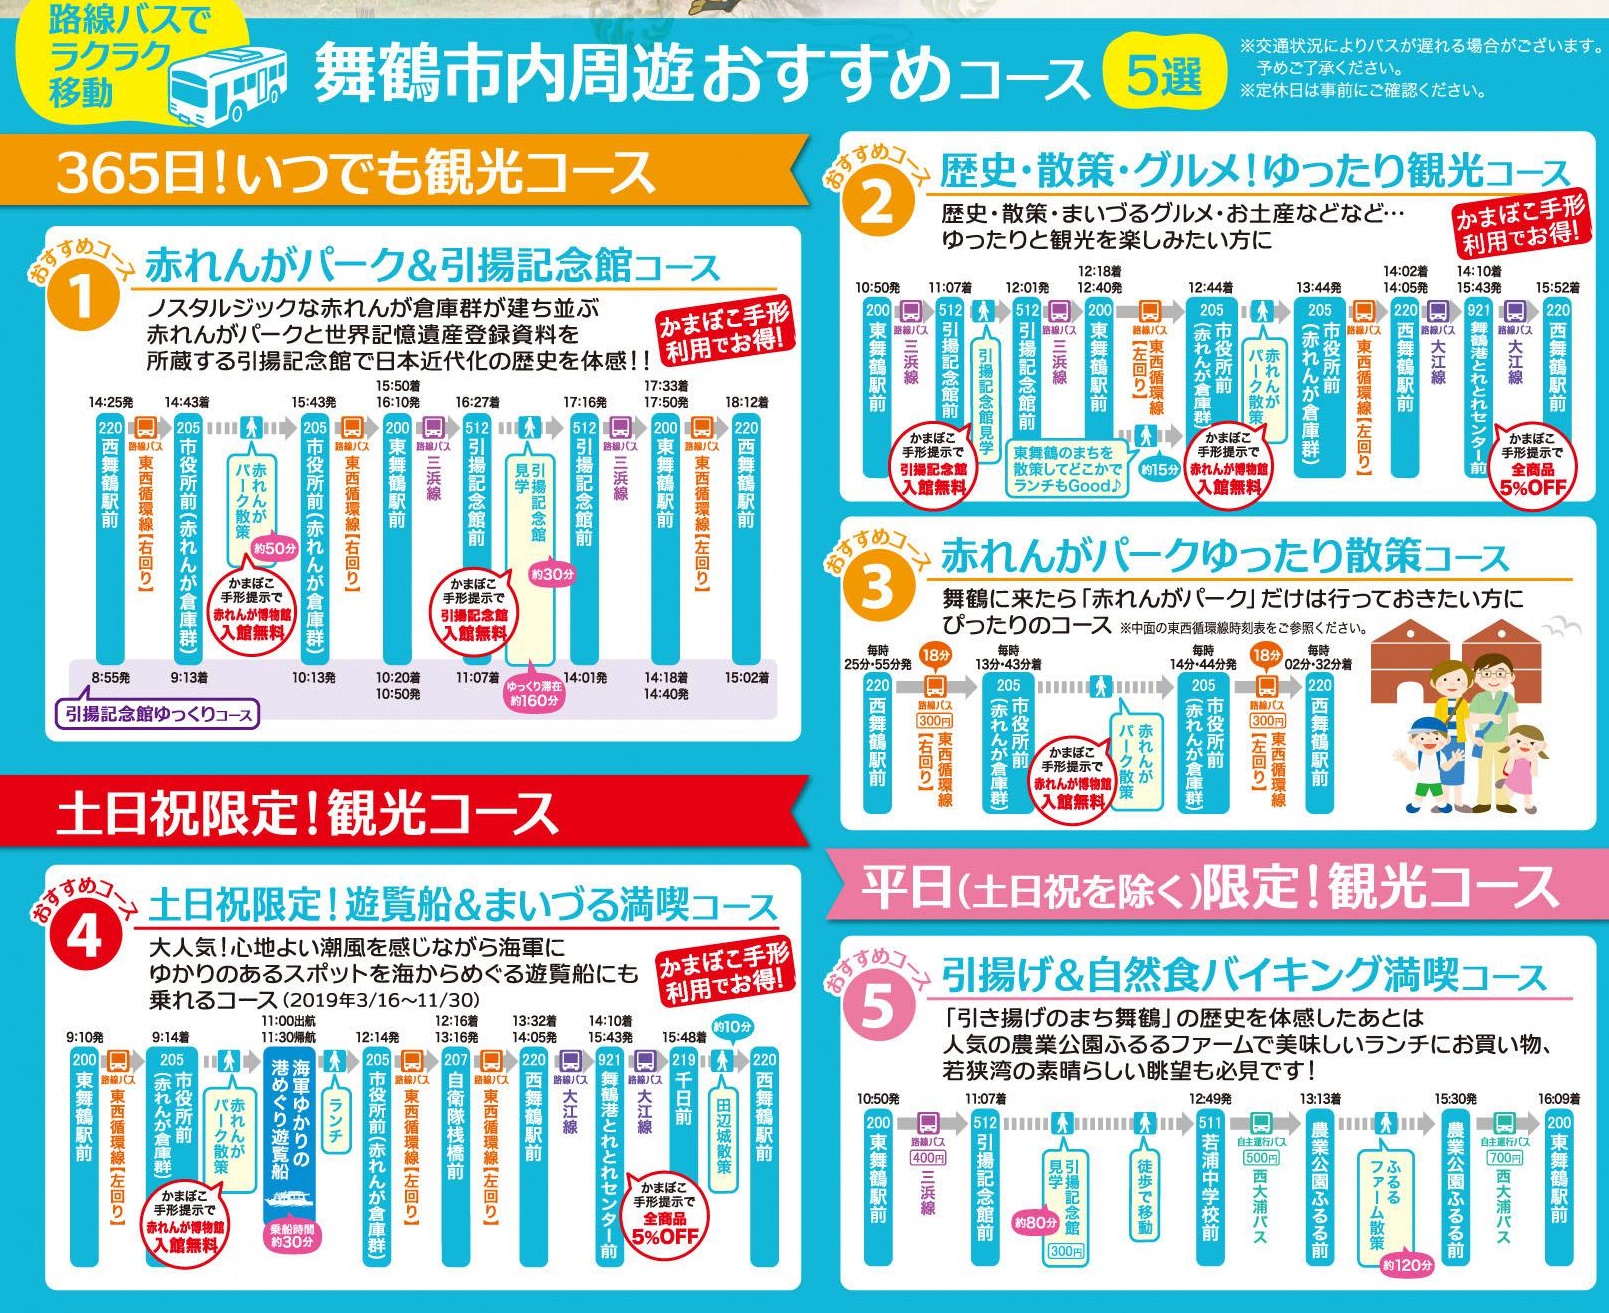 http://www.maizuru-kanko.net/event/img/%E3%83%A2%E3%83%87%E3%83%AB%E3%82%B3%E3%83%BC%E3%82%B9.jpg